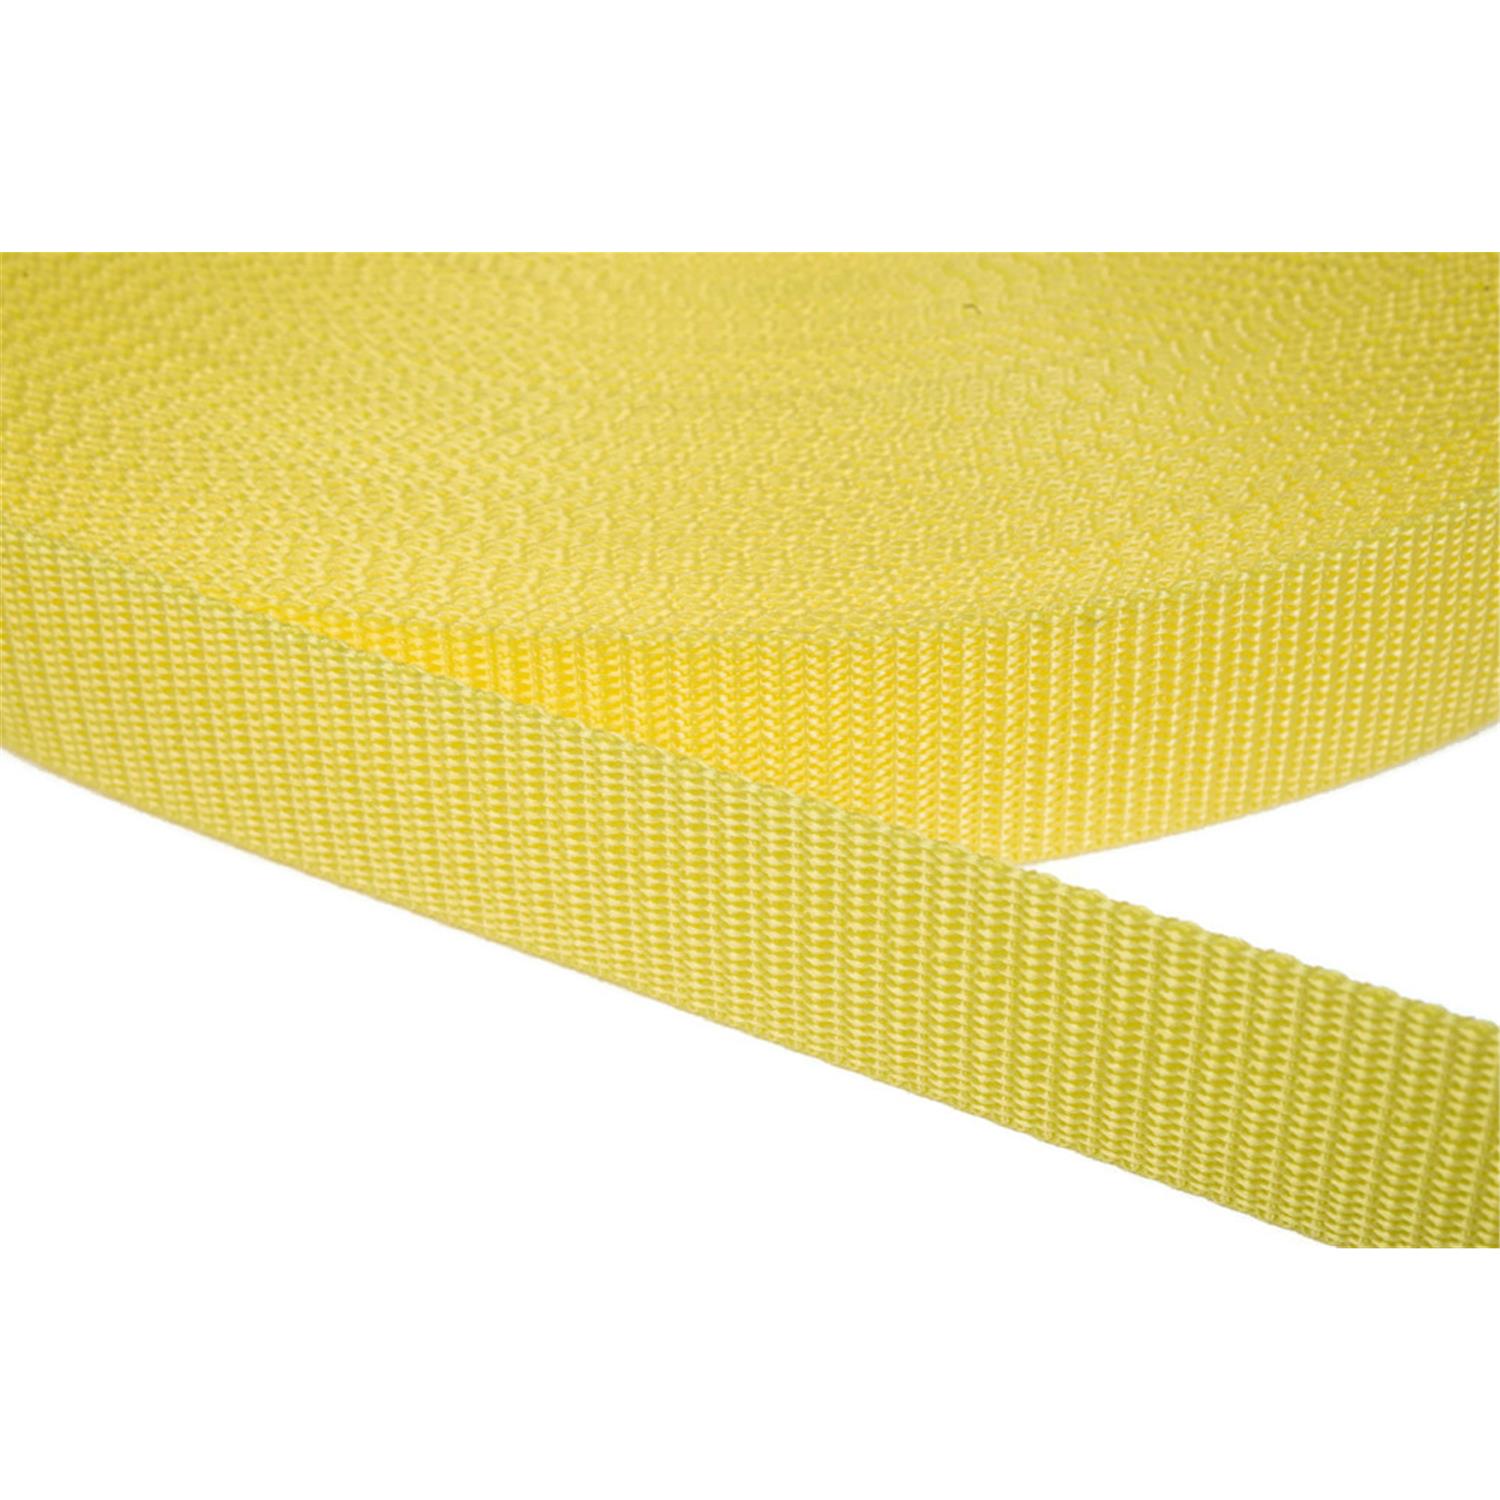 Gurtband 50mm breit aus Polypropylen in 41 Farben 09 - zitronengelb 12 Meter